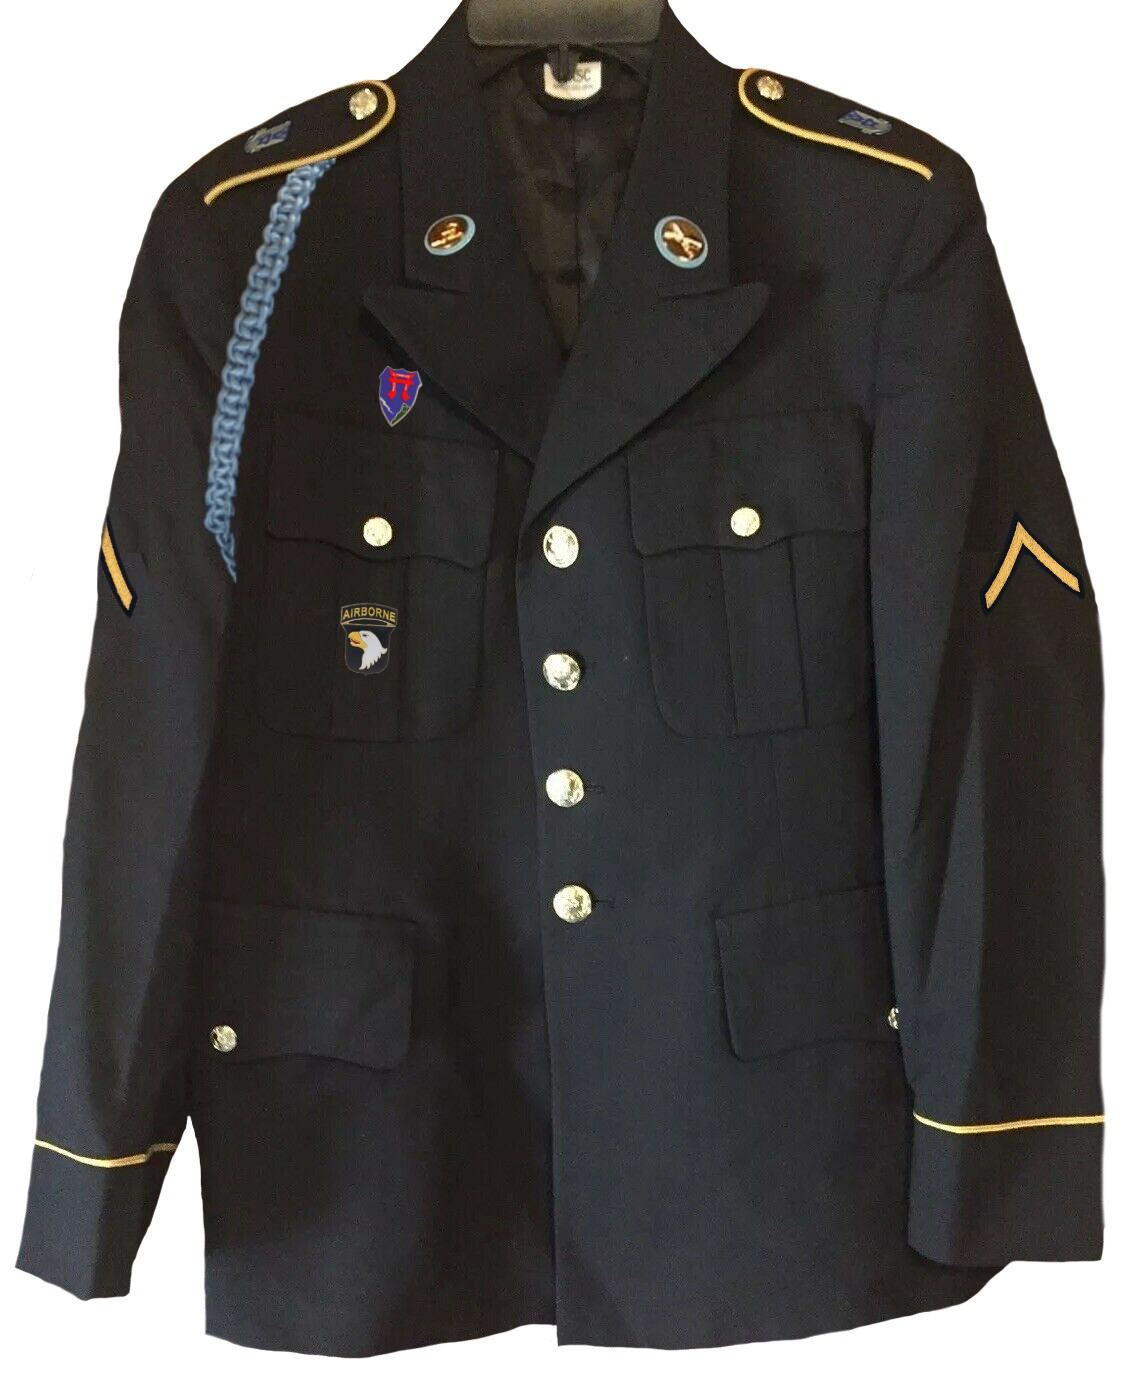 Die Uniform von Seroveih